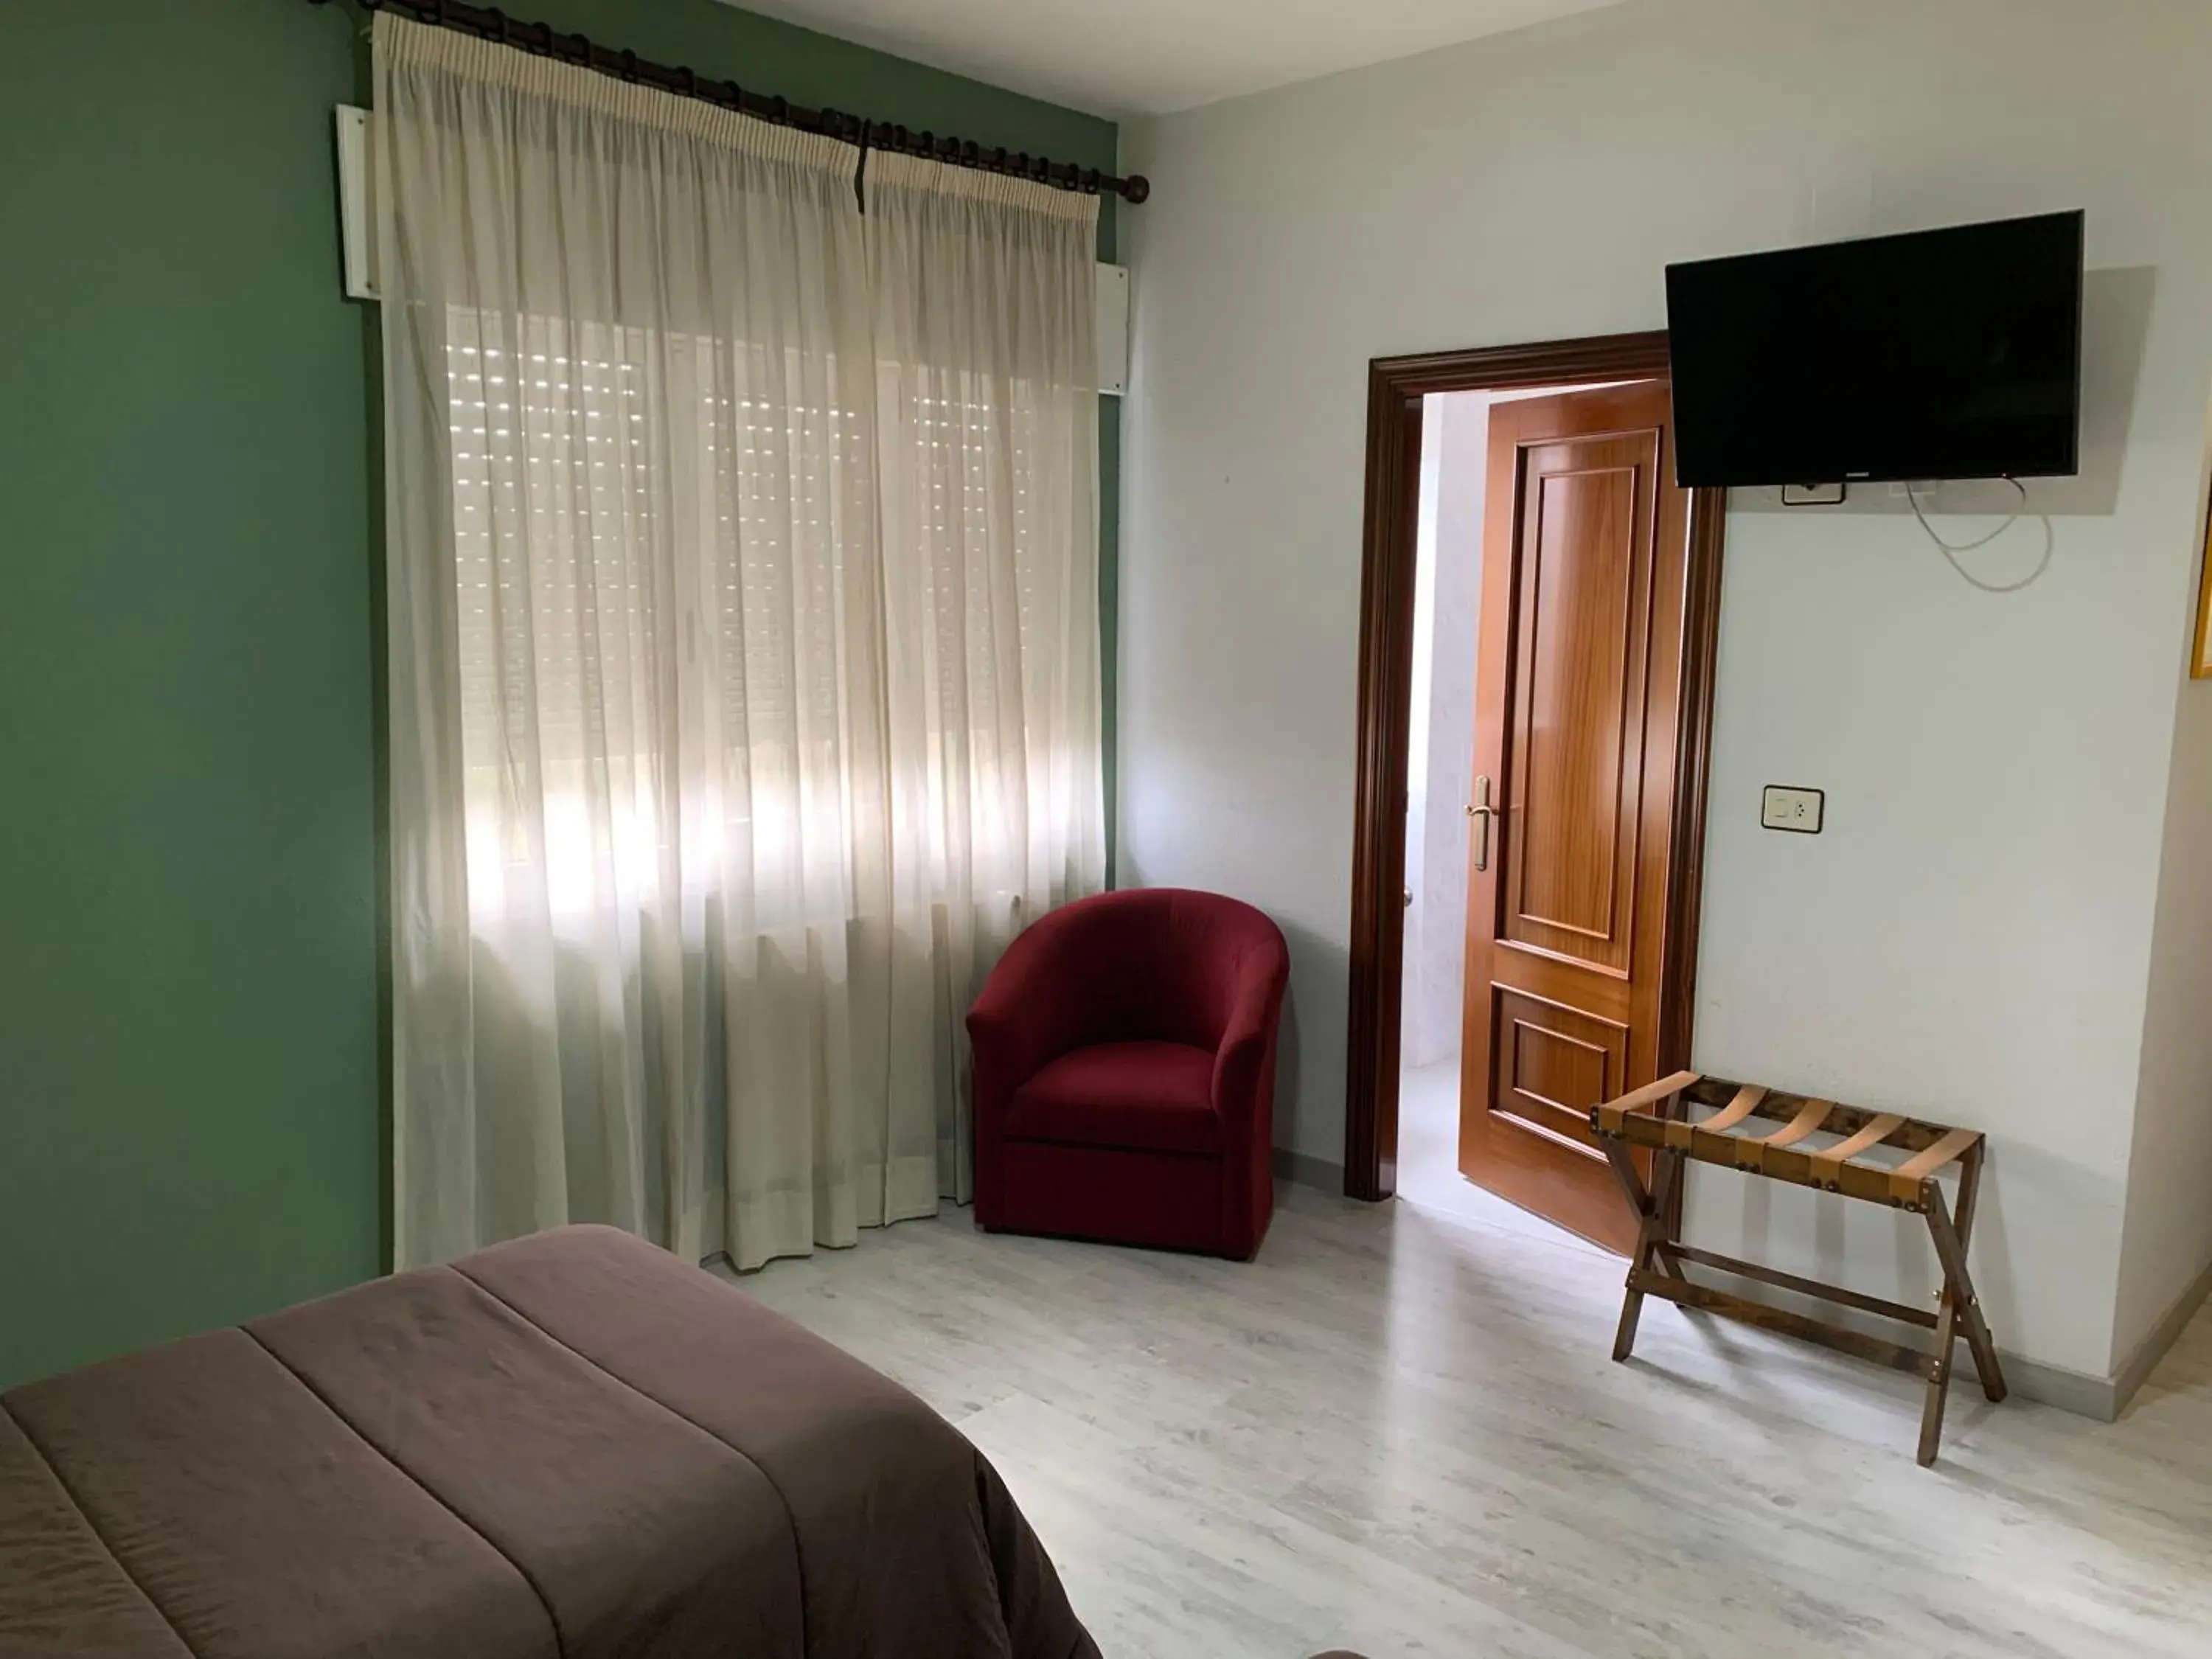 Bedroom, TV/Entertainment Center in Hotel Los Olmos